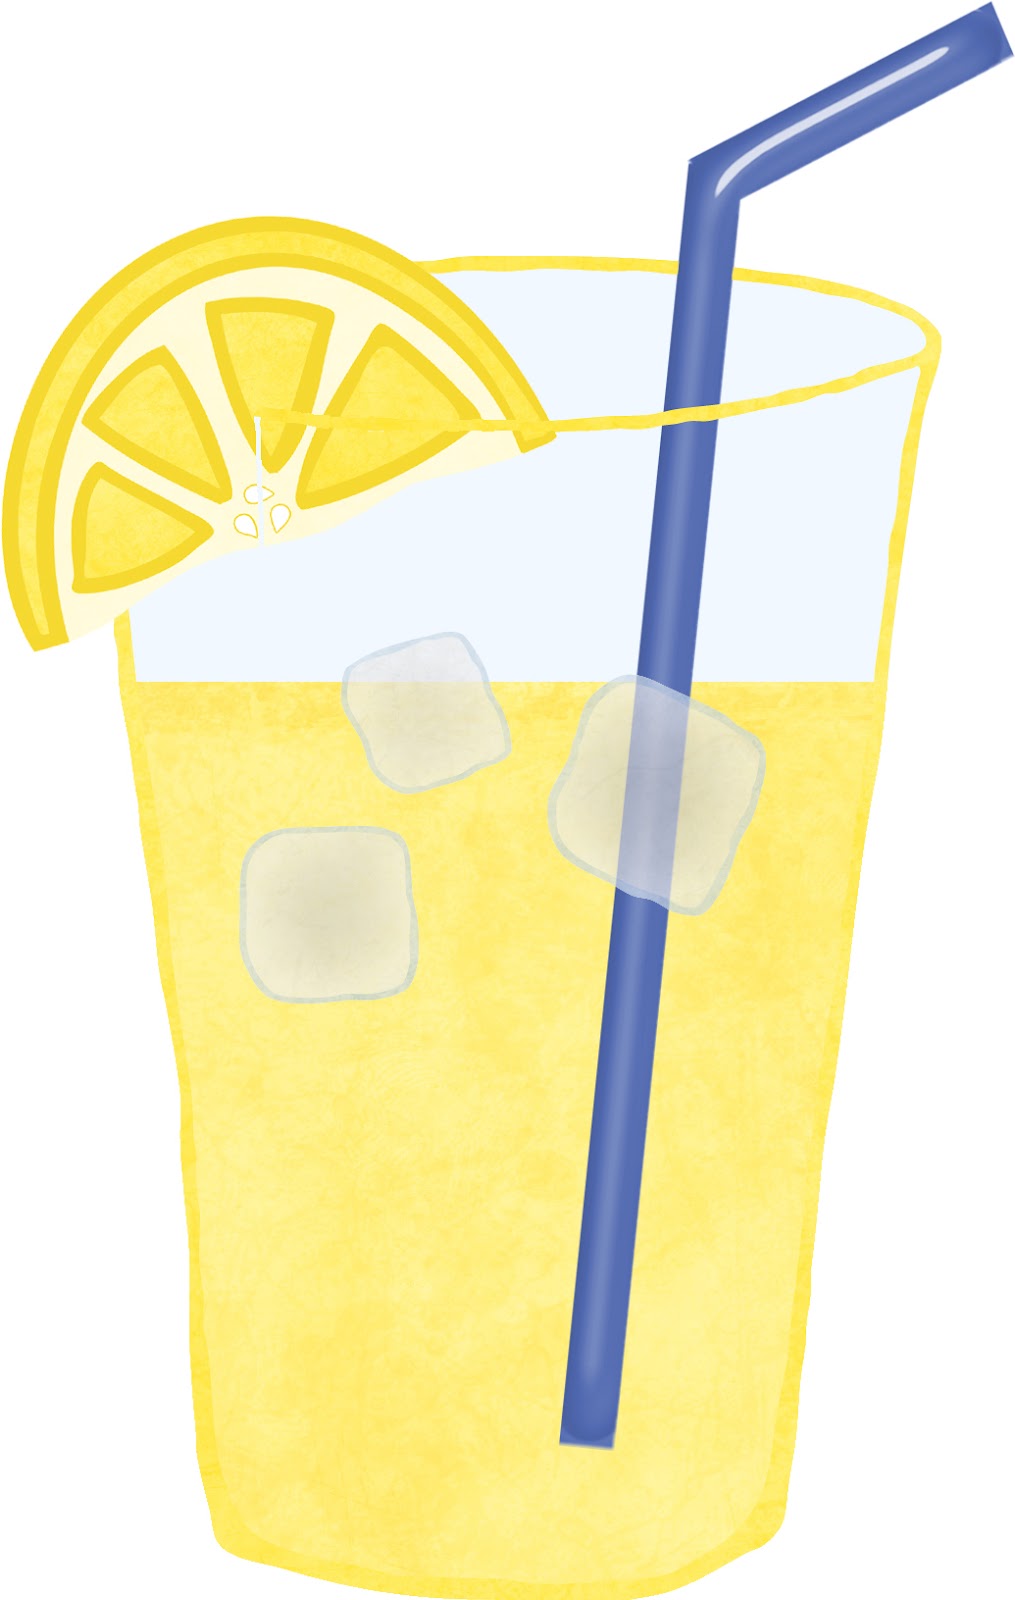 cup lemonade clipart - photo #18